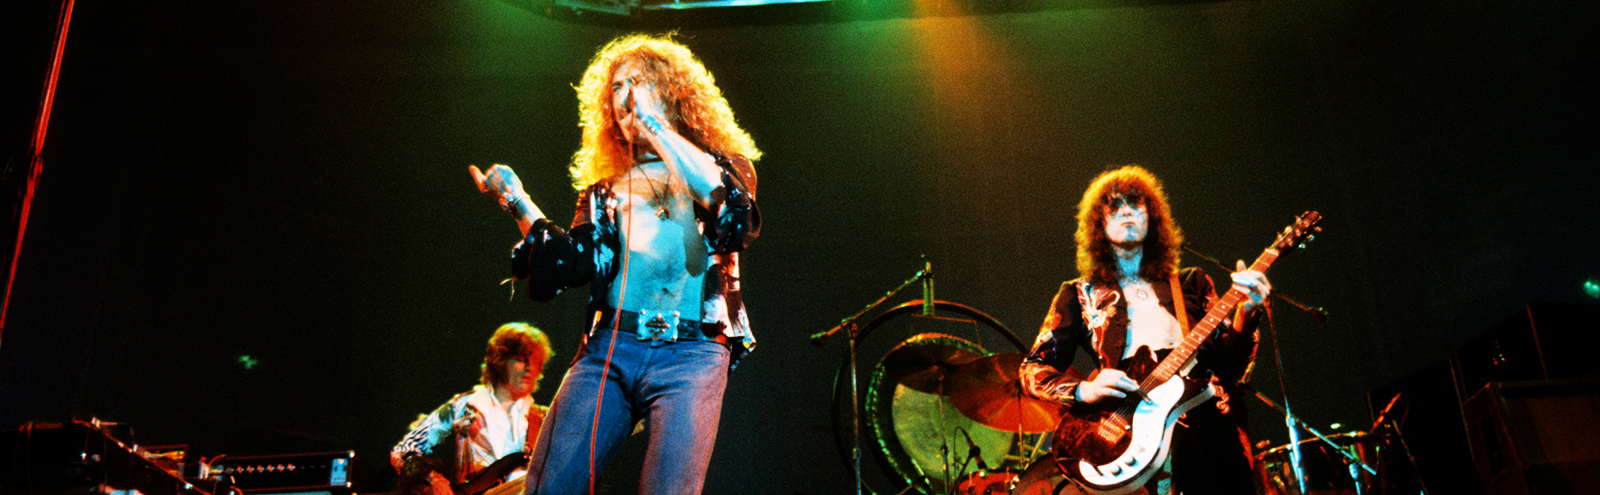 Hykler Overflødig ægteskab Led Zeppelin's Best Songs, Ranked